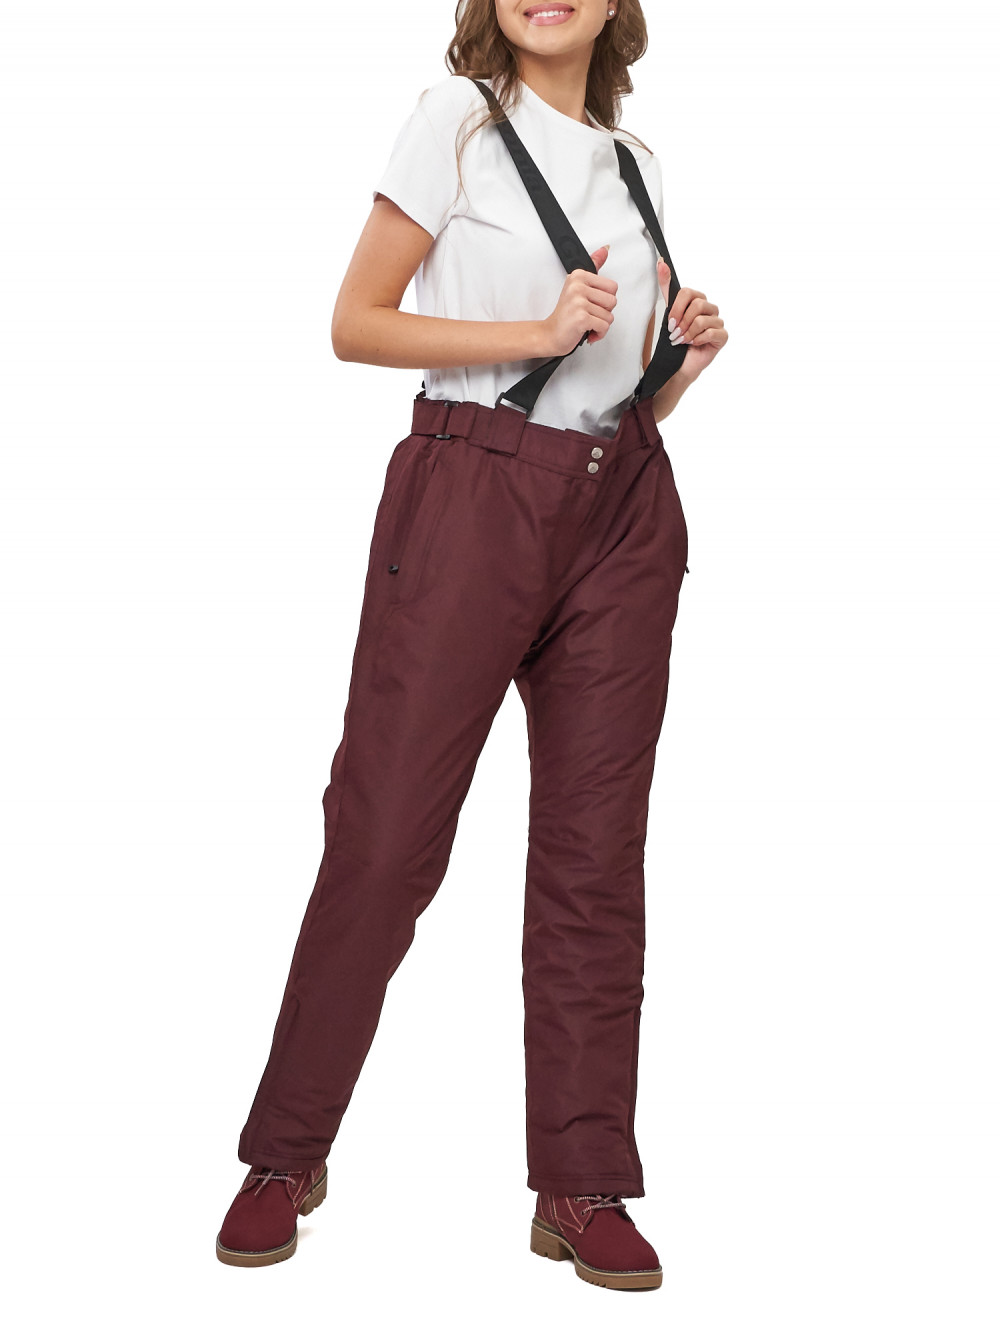 Полукомбинезон брюки горнолыжные женские big size AD66413Bo бордового цвета, 56